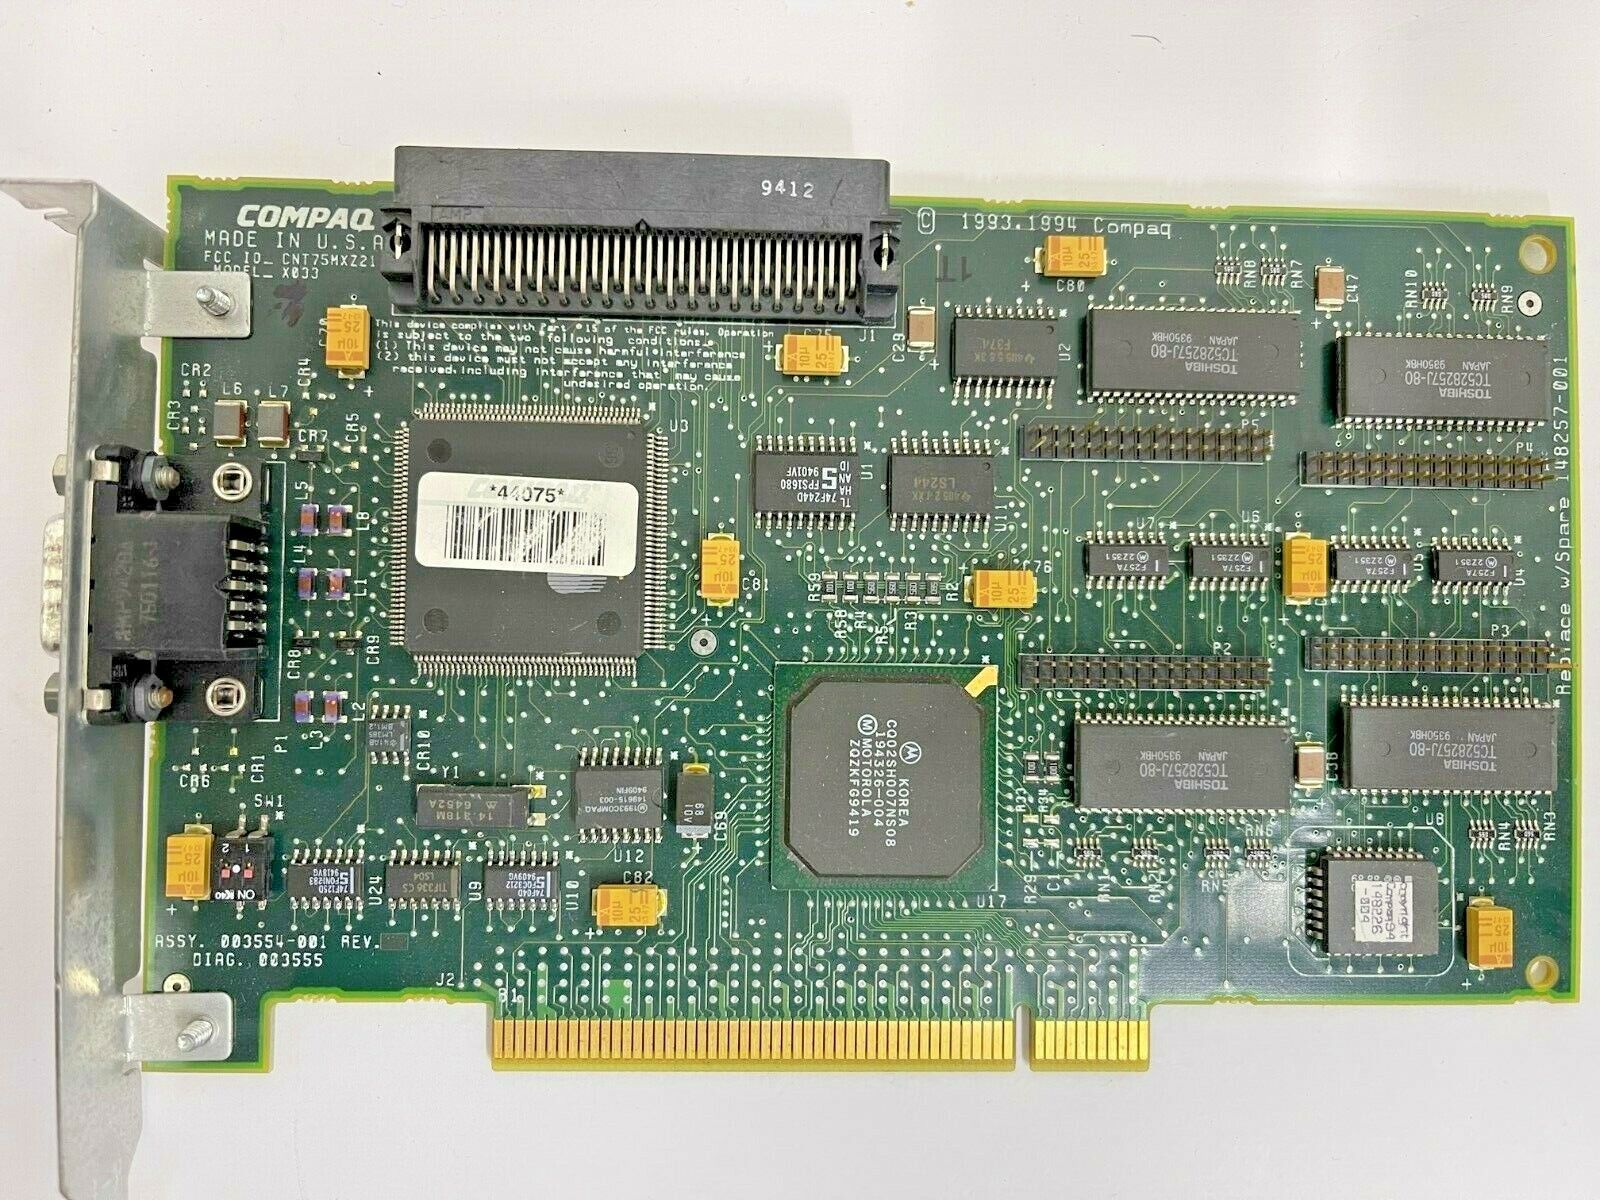 VINTAGE HP COMPAQ QVISION 1280 1 MEG PCI VGA & WIDE SCSI CONTROLLER CARD BXSC1